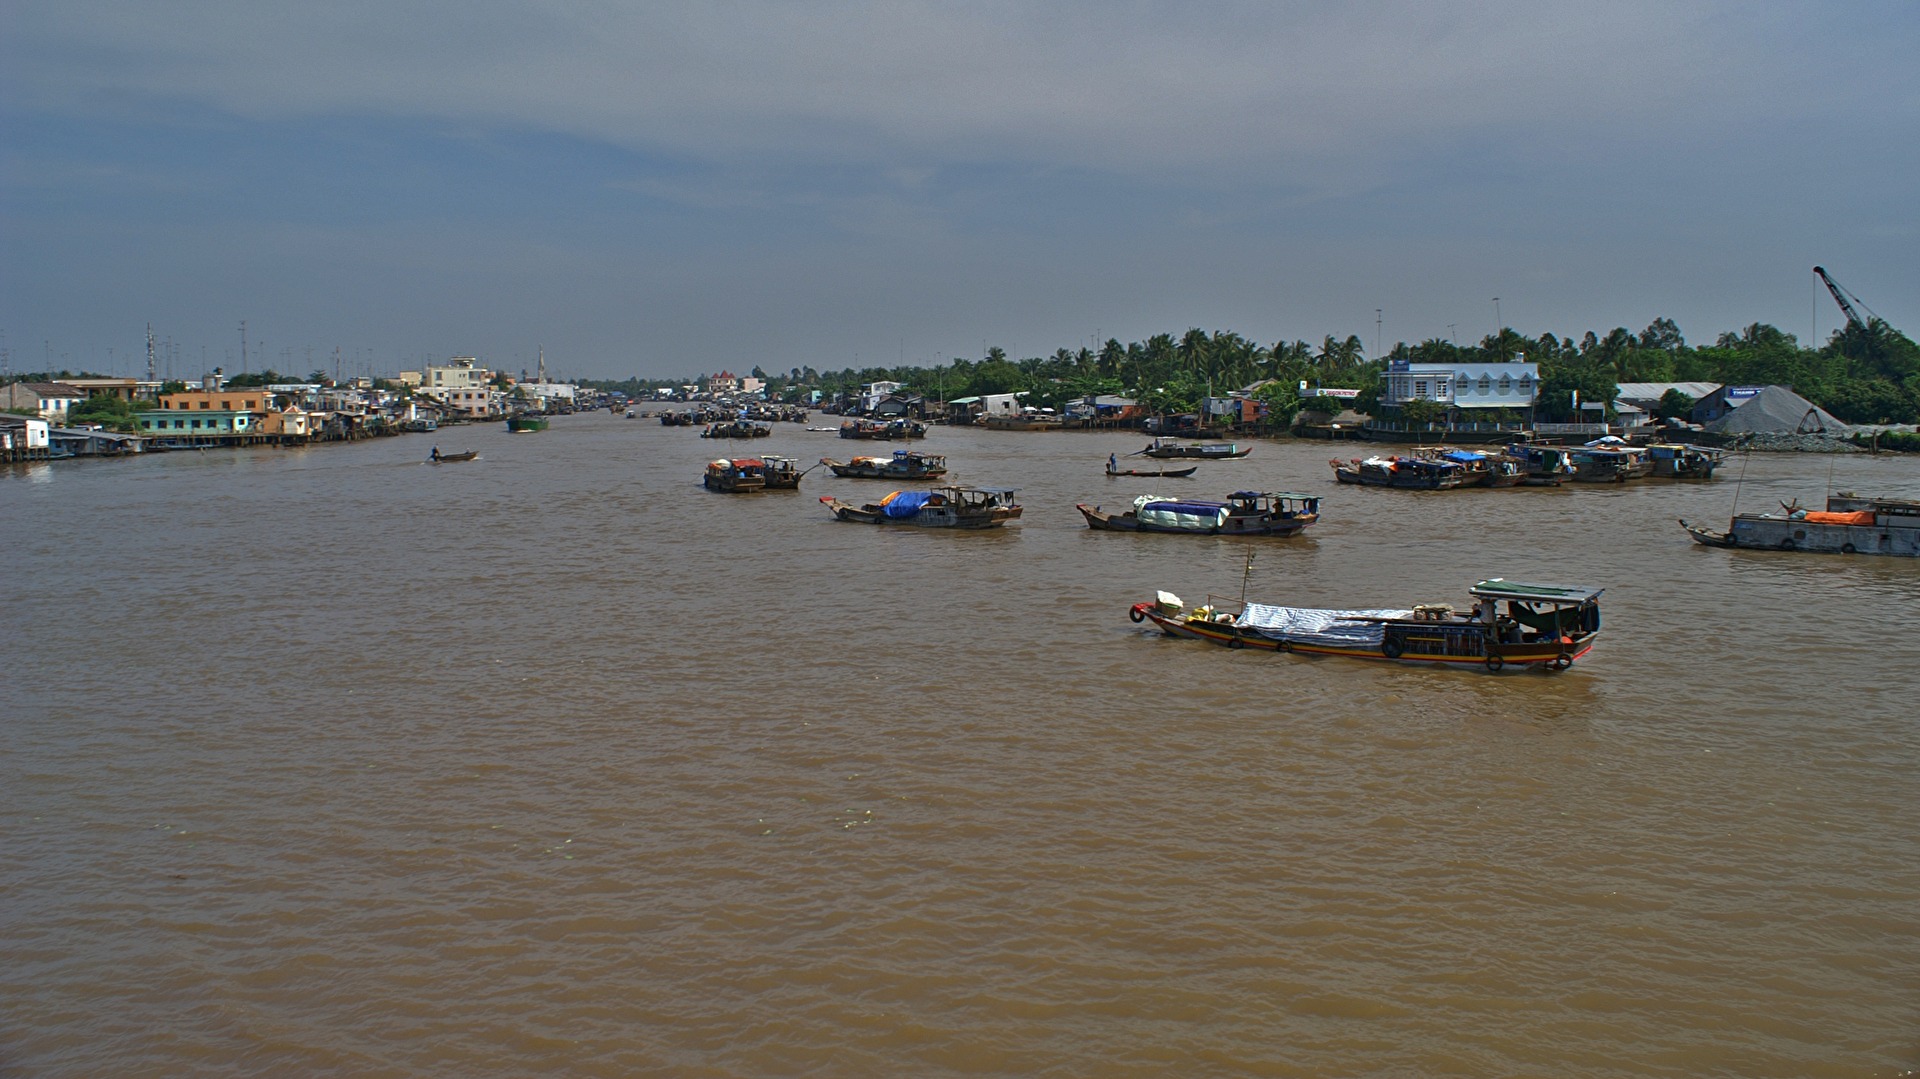 #Boote - sind im Mekongdelta allgegenwärtig